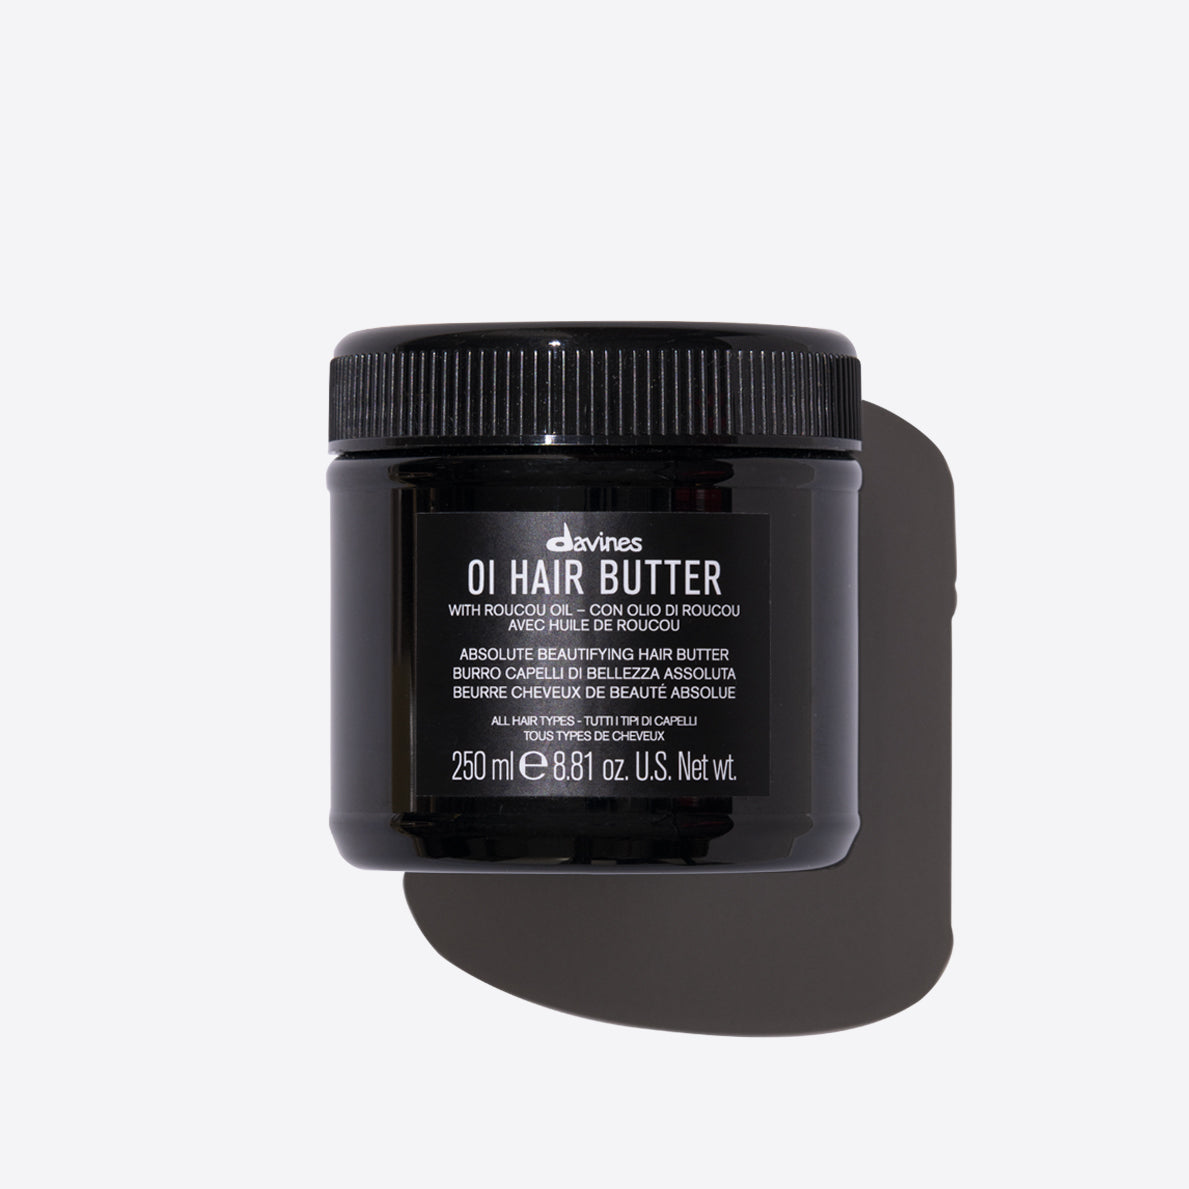 OI Hair Butter 1  250 ml / 0 fl.oz.Davines
